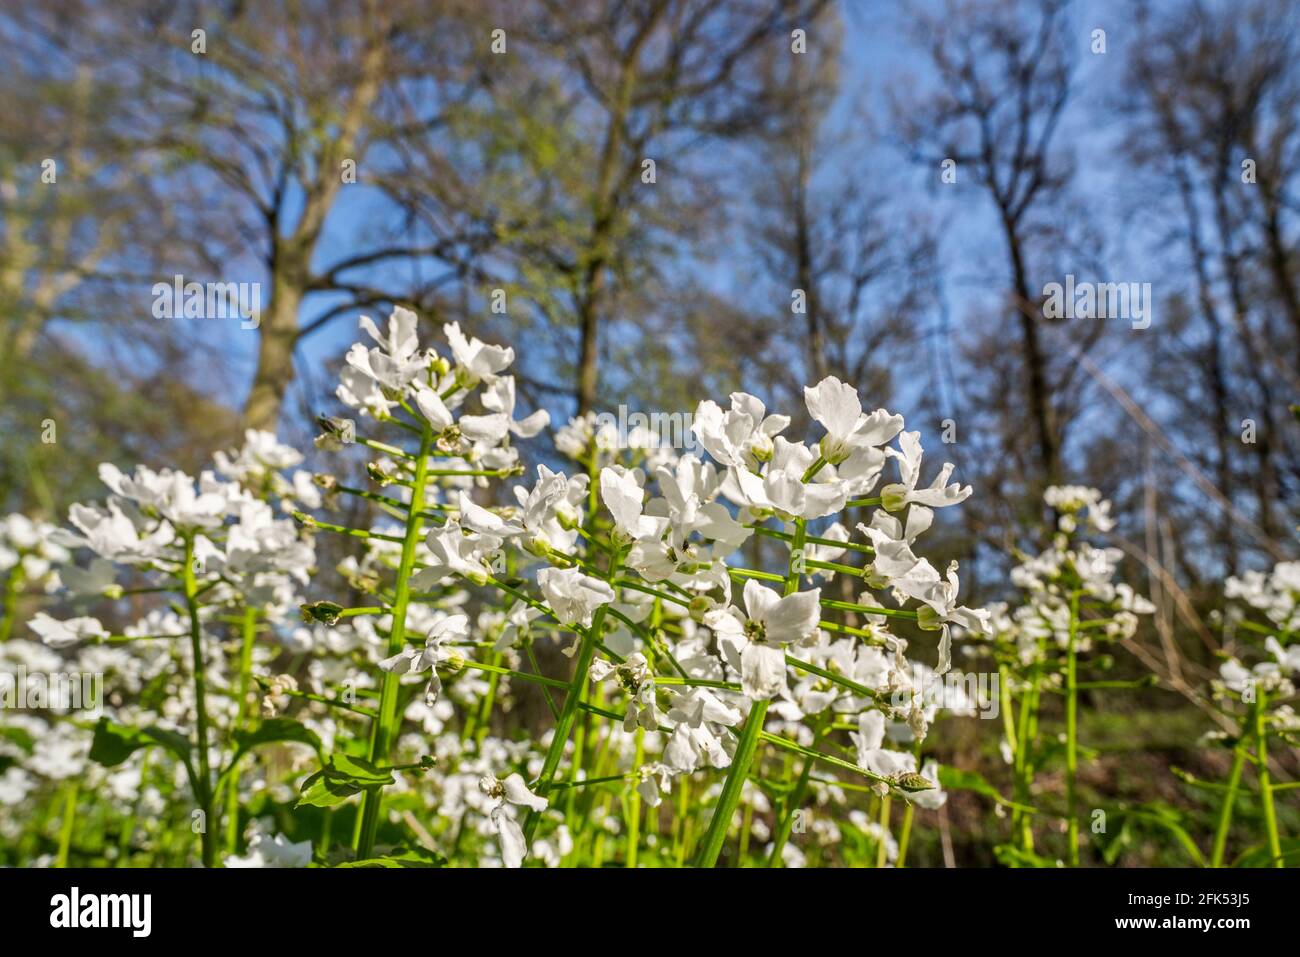 Kuckuckblume / Damenkittel / mayflower (Cardamine pratensis) Mit seltenen weißen Blütenblättern, die im Frühjahr blühen Stockfoto